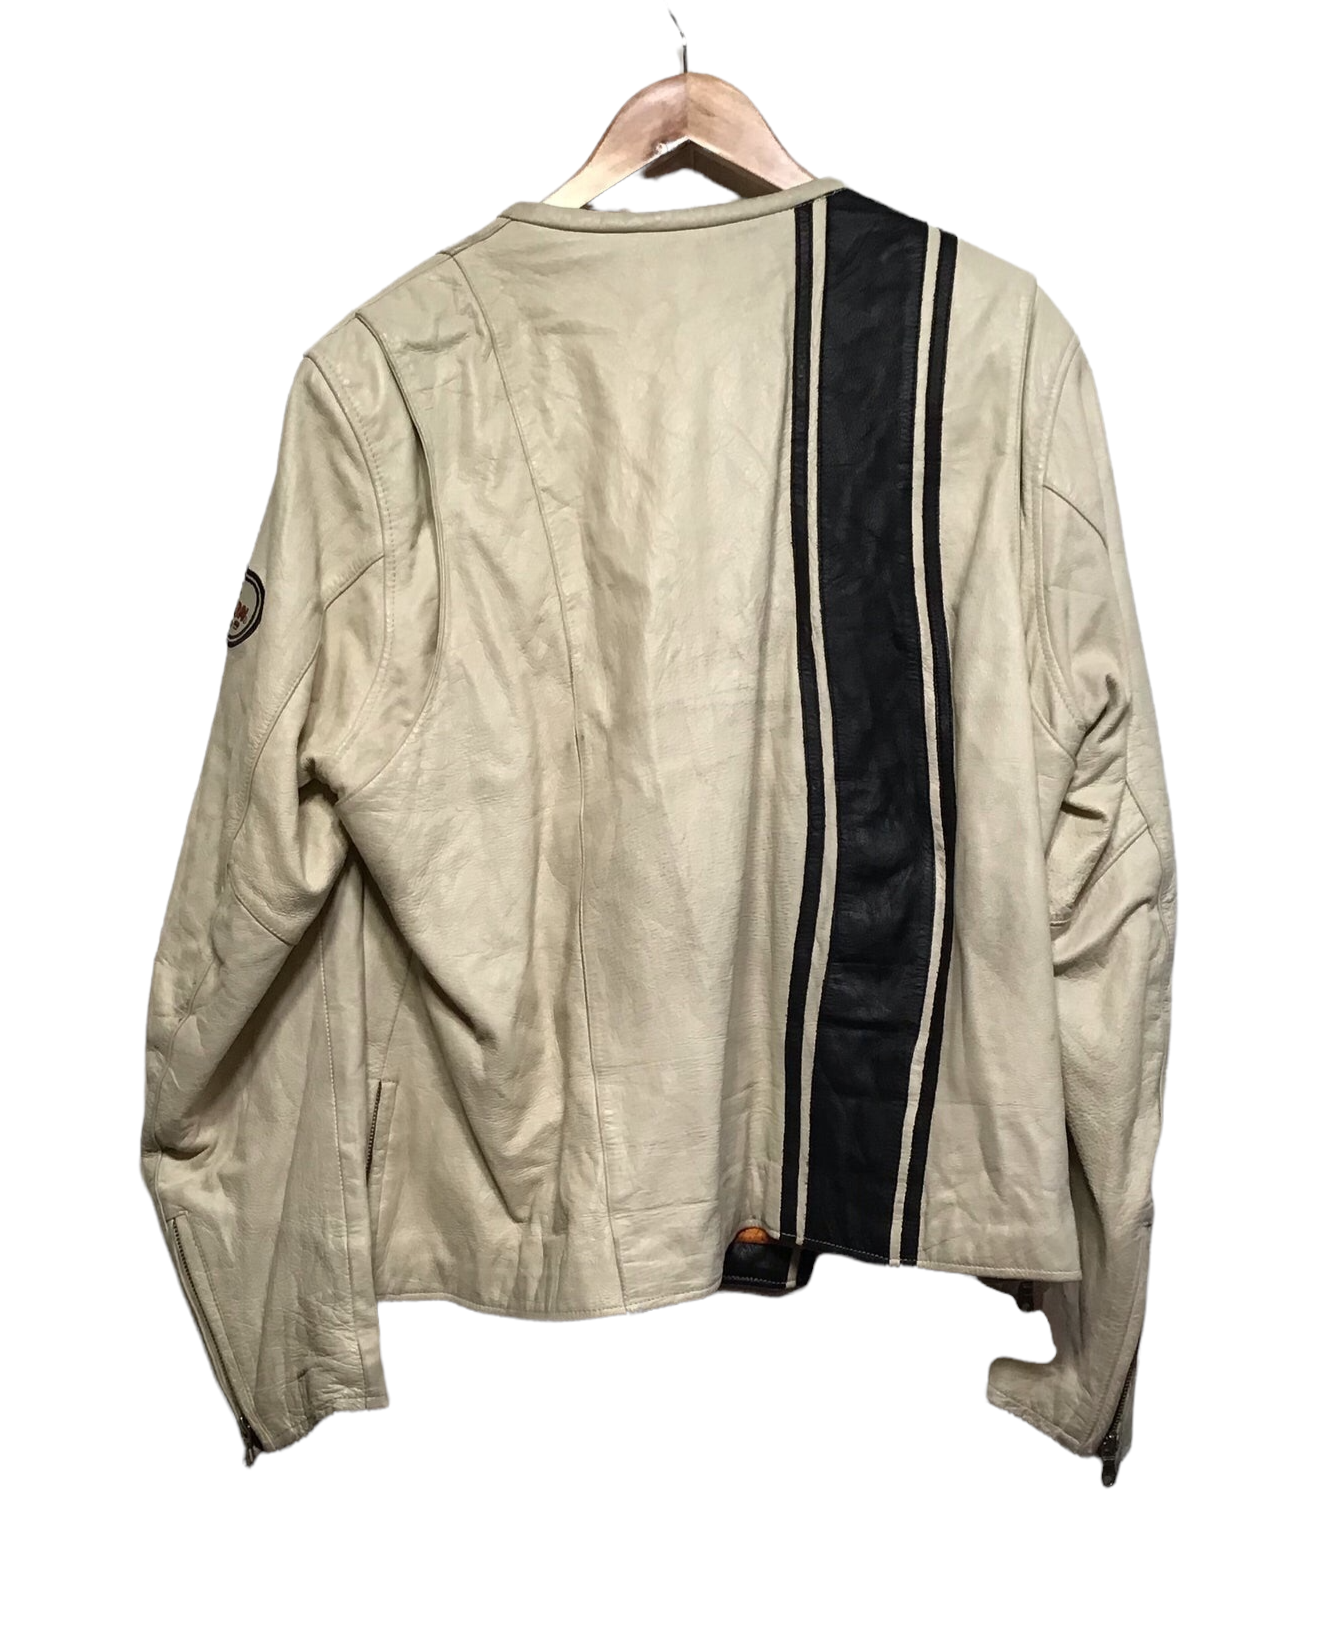 Harley Davidson White Leather Jacket (Size M)